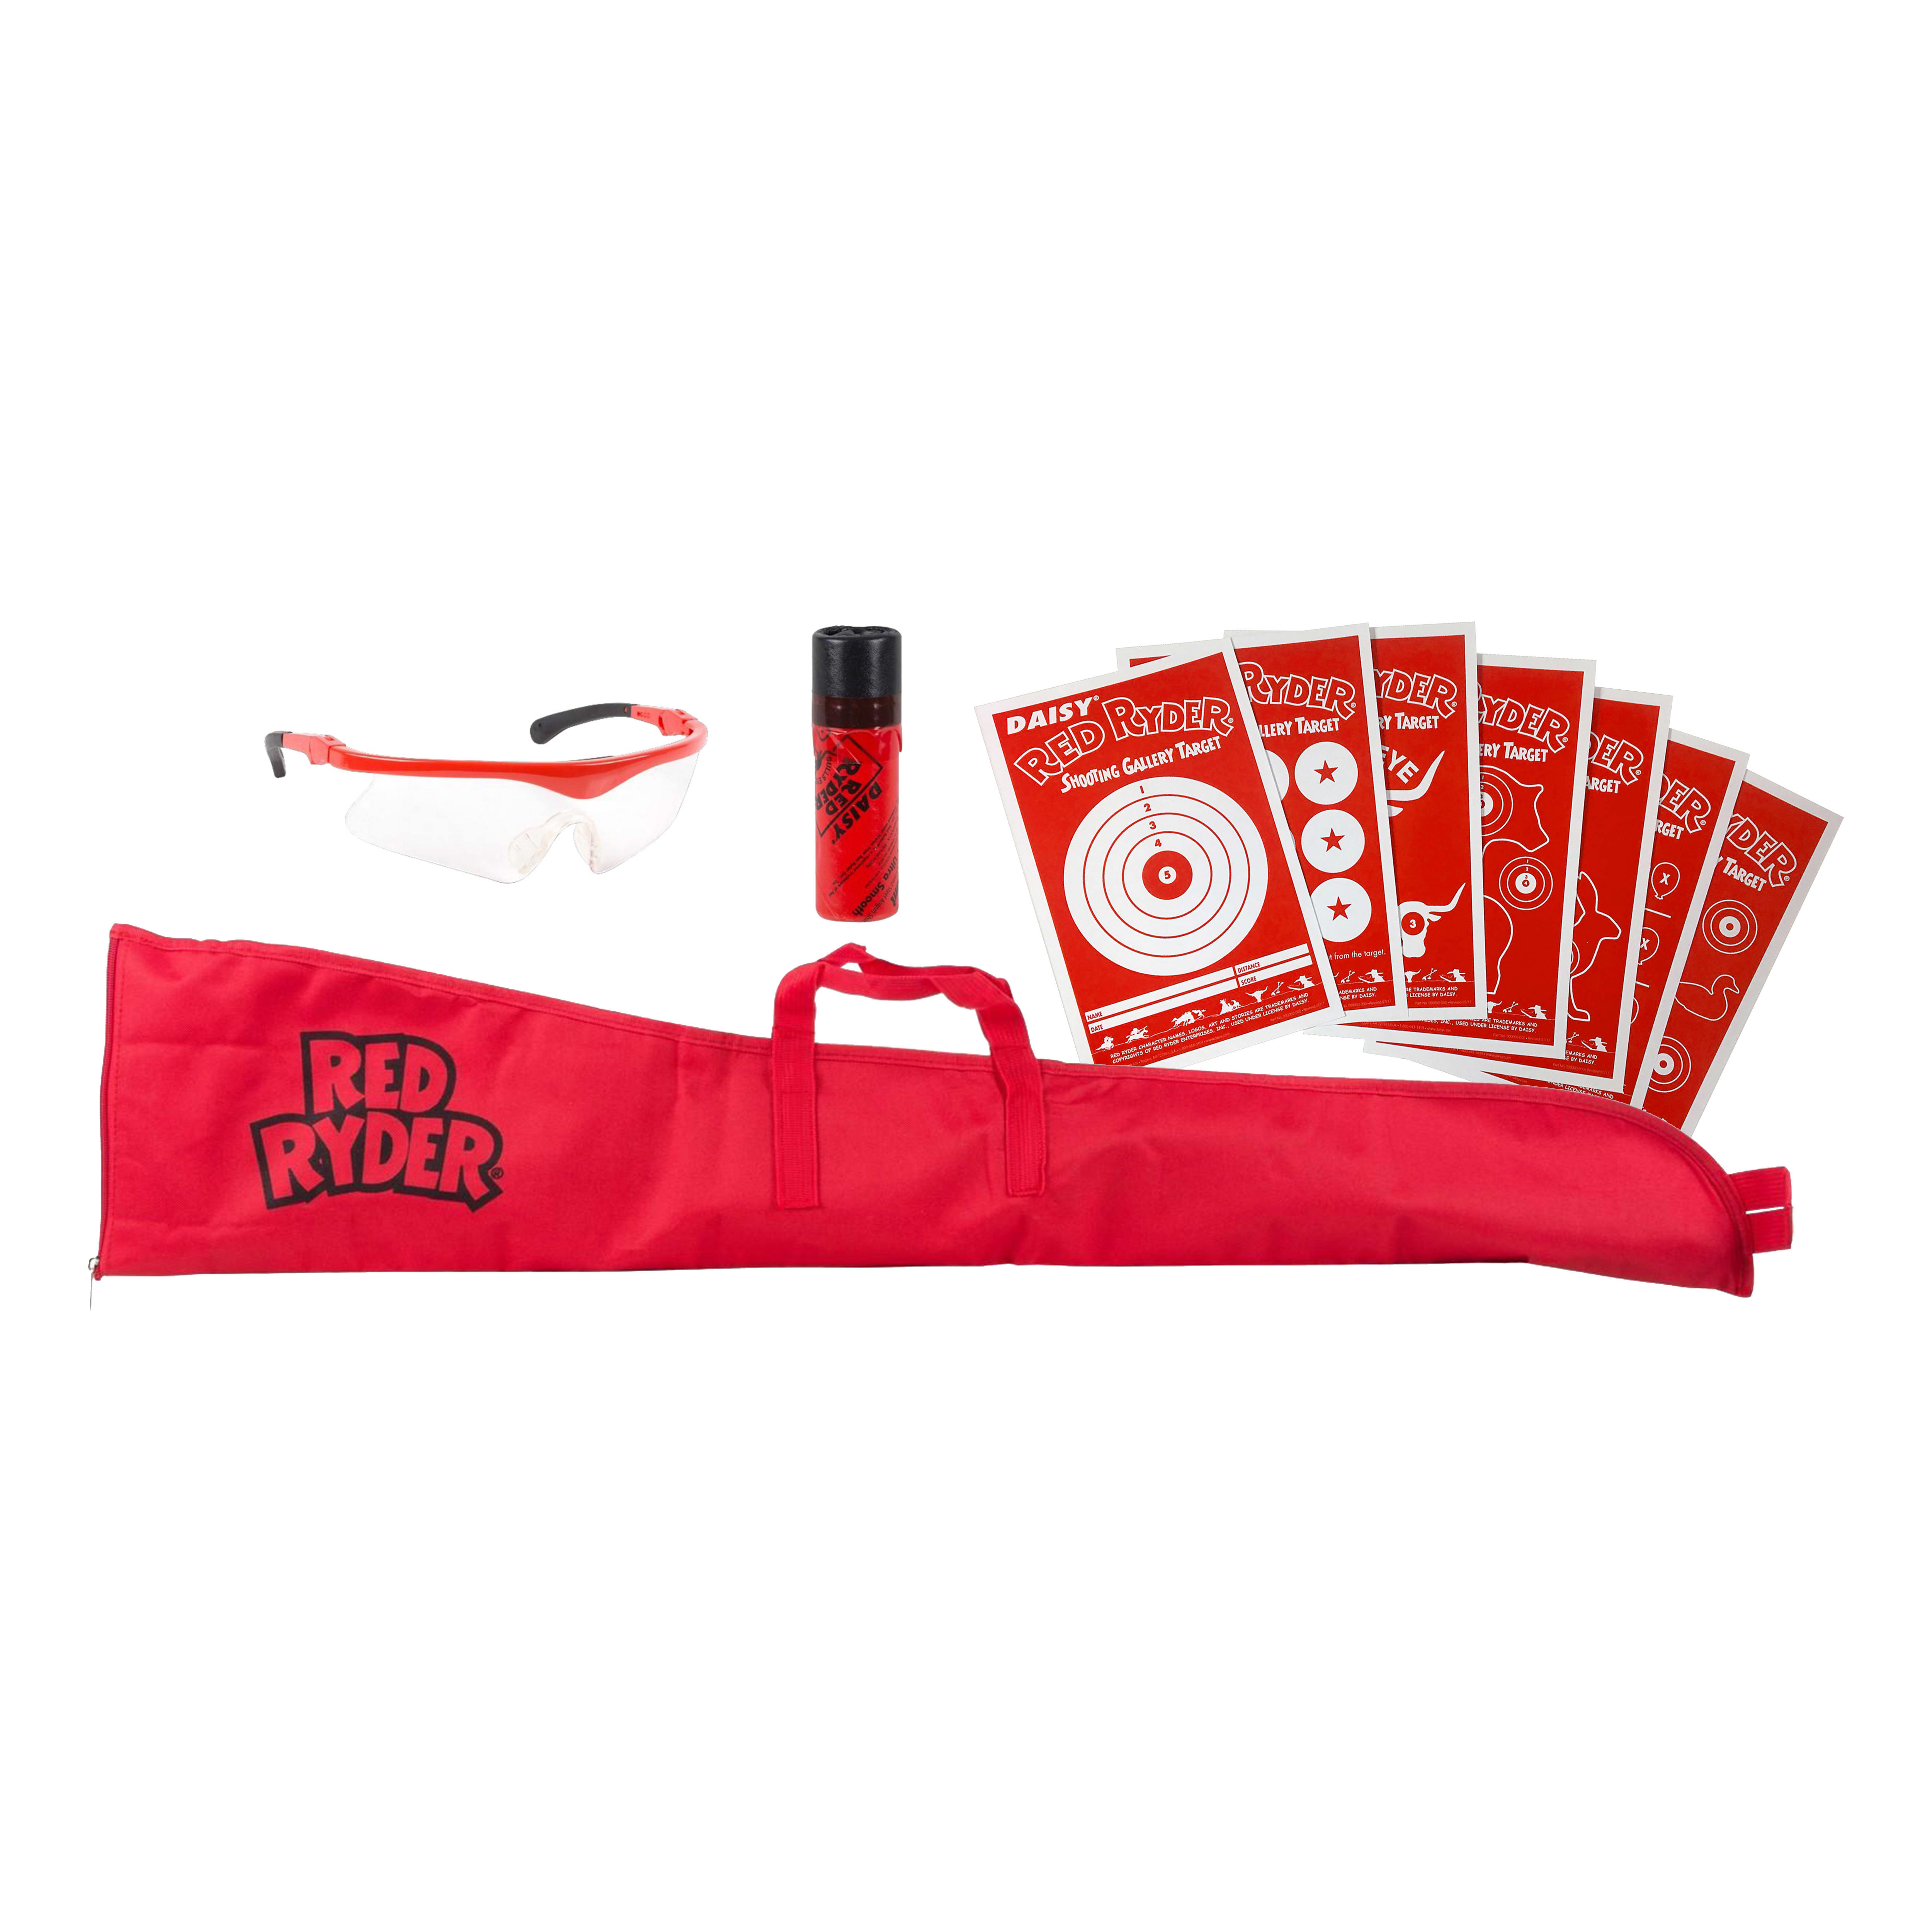 Daisy® Red Ryder Retro Starter Kit